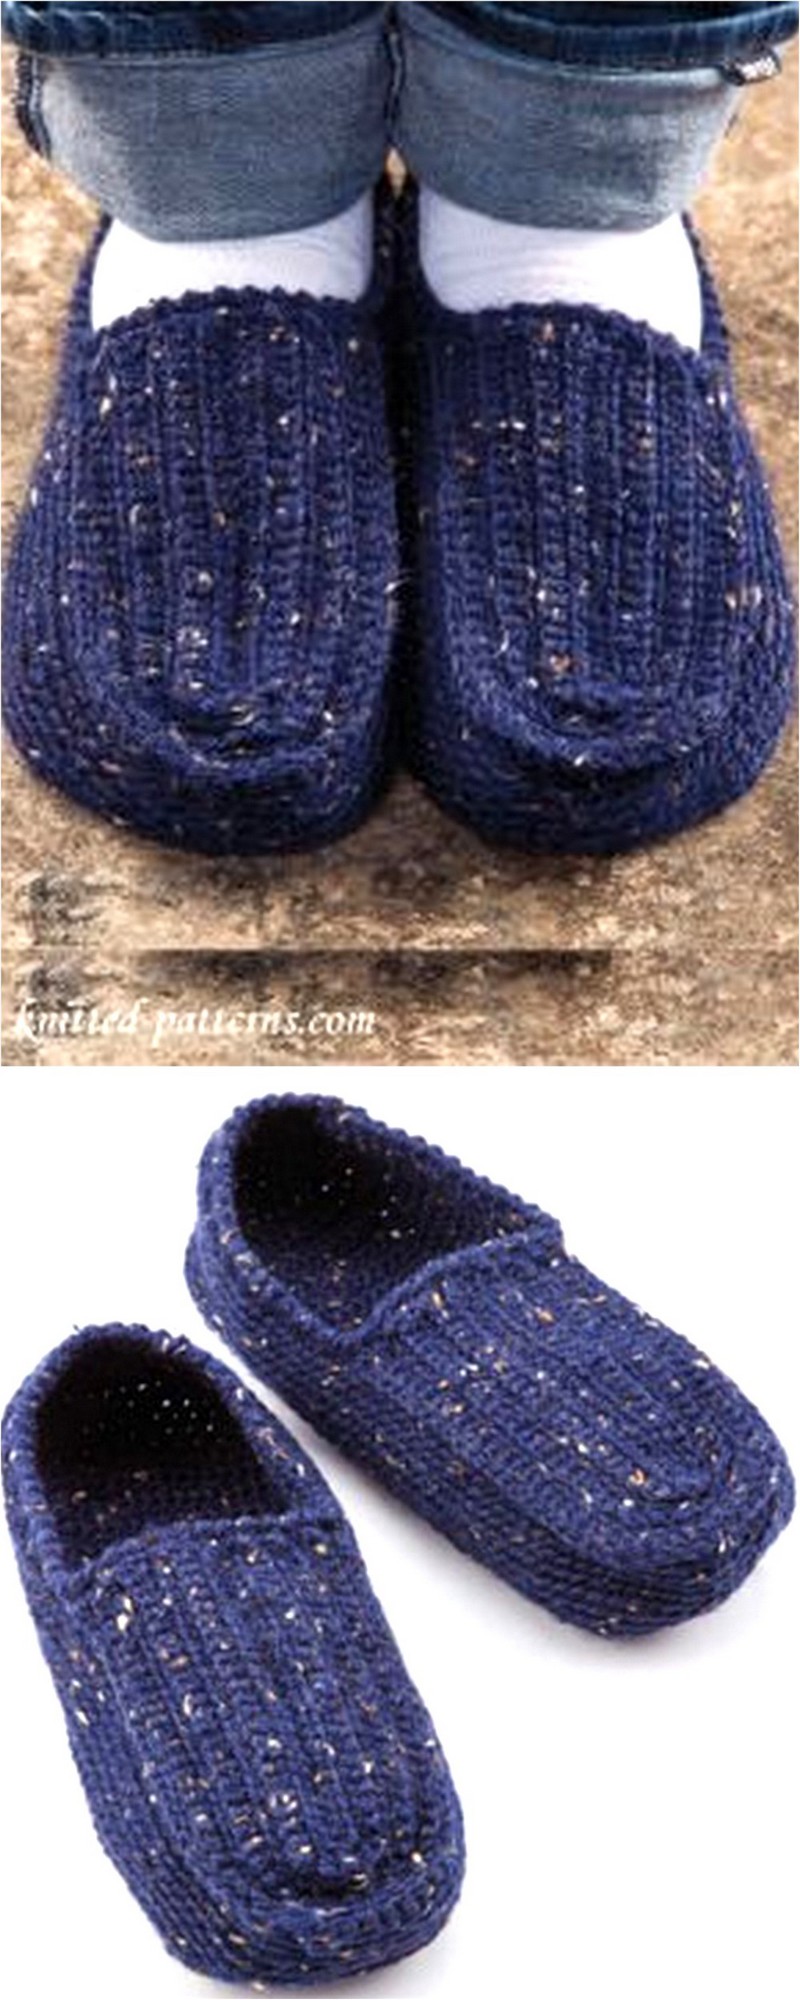 5 Men's Slippers Crochet Pattern Free 1